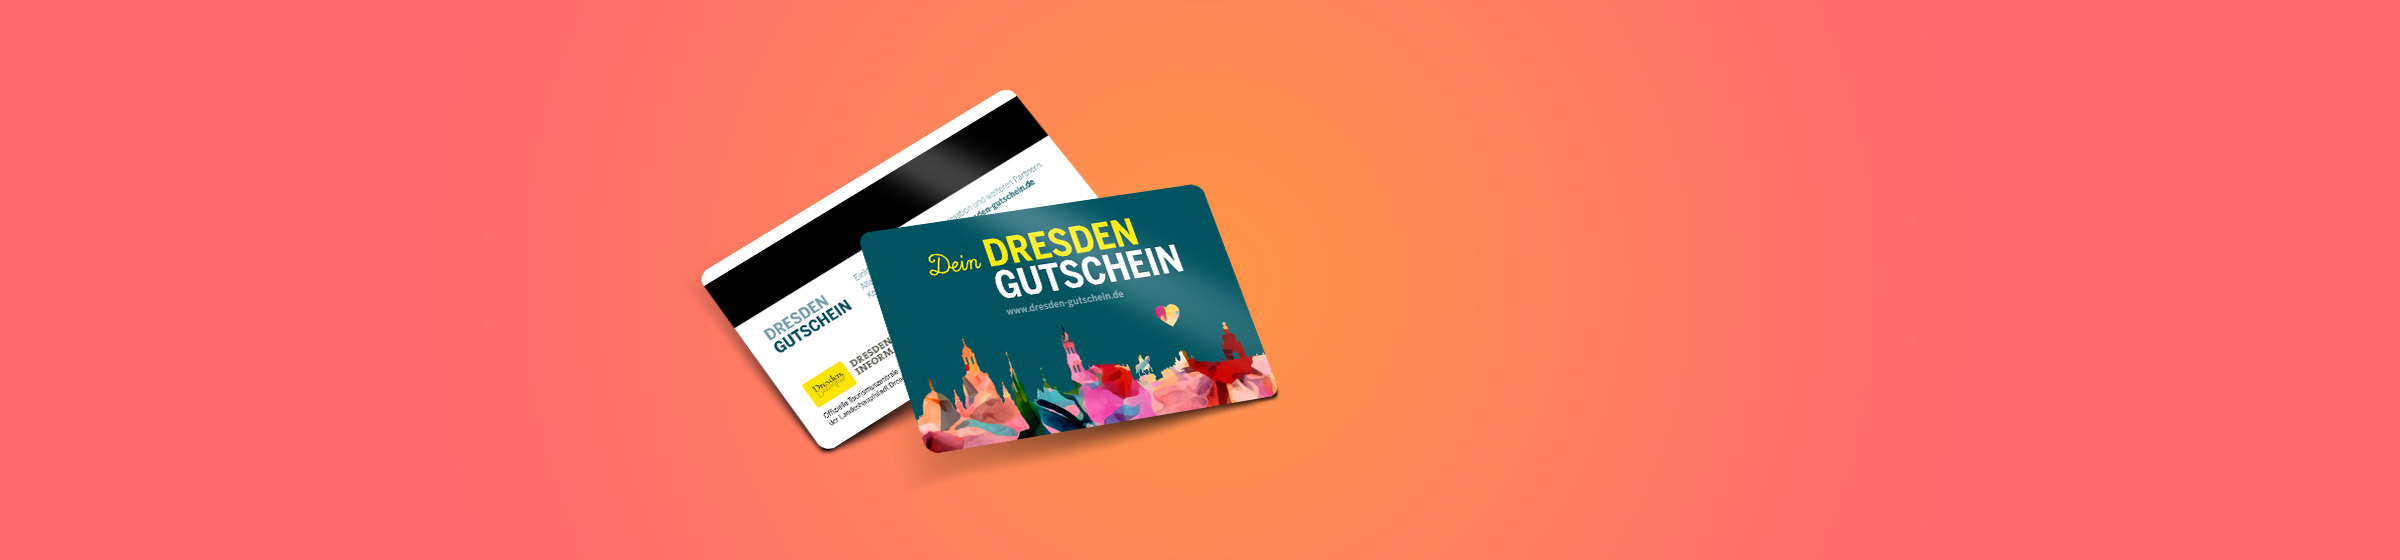 Dresden-Gutschein